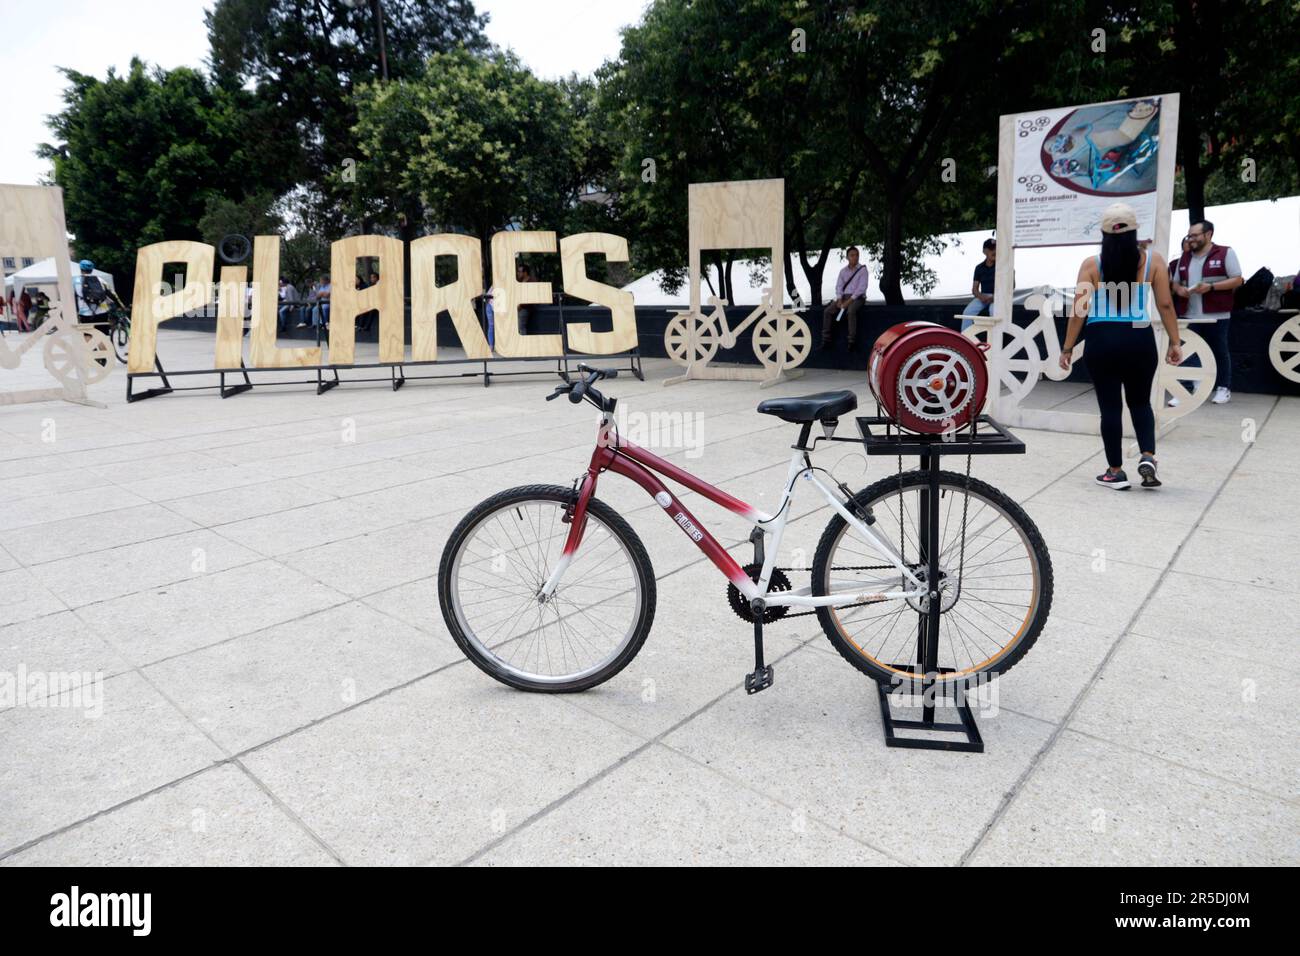 Mexiko-Stadt, Mexiko. 2. Juni 2023. Während des zweiten Fahrradfestivals am Monument to the Revolution in Mexico City wird ein Fahrrad für den Betrieb einer Maschine zum Schälen von Maiskolben namens "heller Bike" umgebaut. Am 2. Juni 2023 in Mexiko-Stadt, Mexiko (Kreditbild: © Luis Barron/Eyepix via ZUMA Press Wire), NUR REDAKTIONELLE VERWENDUNG! Nicht für den kommerziellen GEBRAUCH! Stockfoto